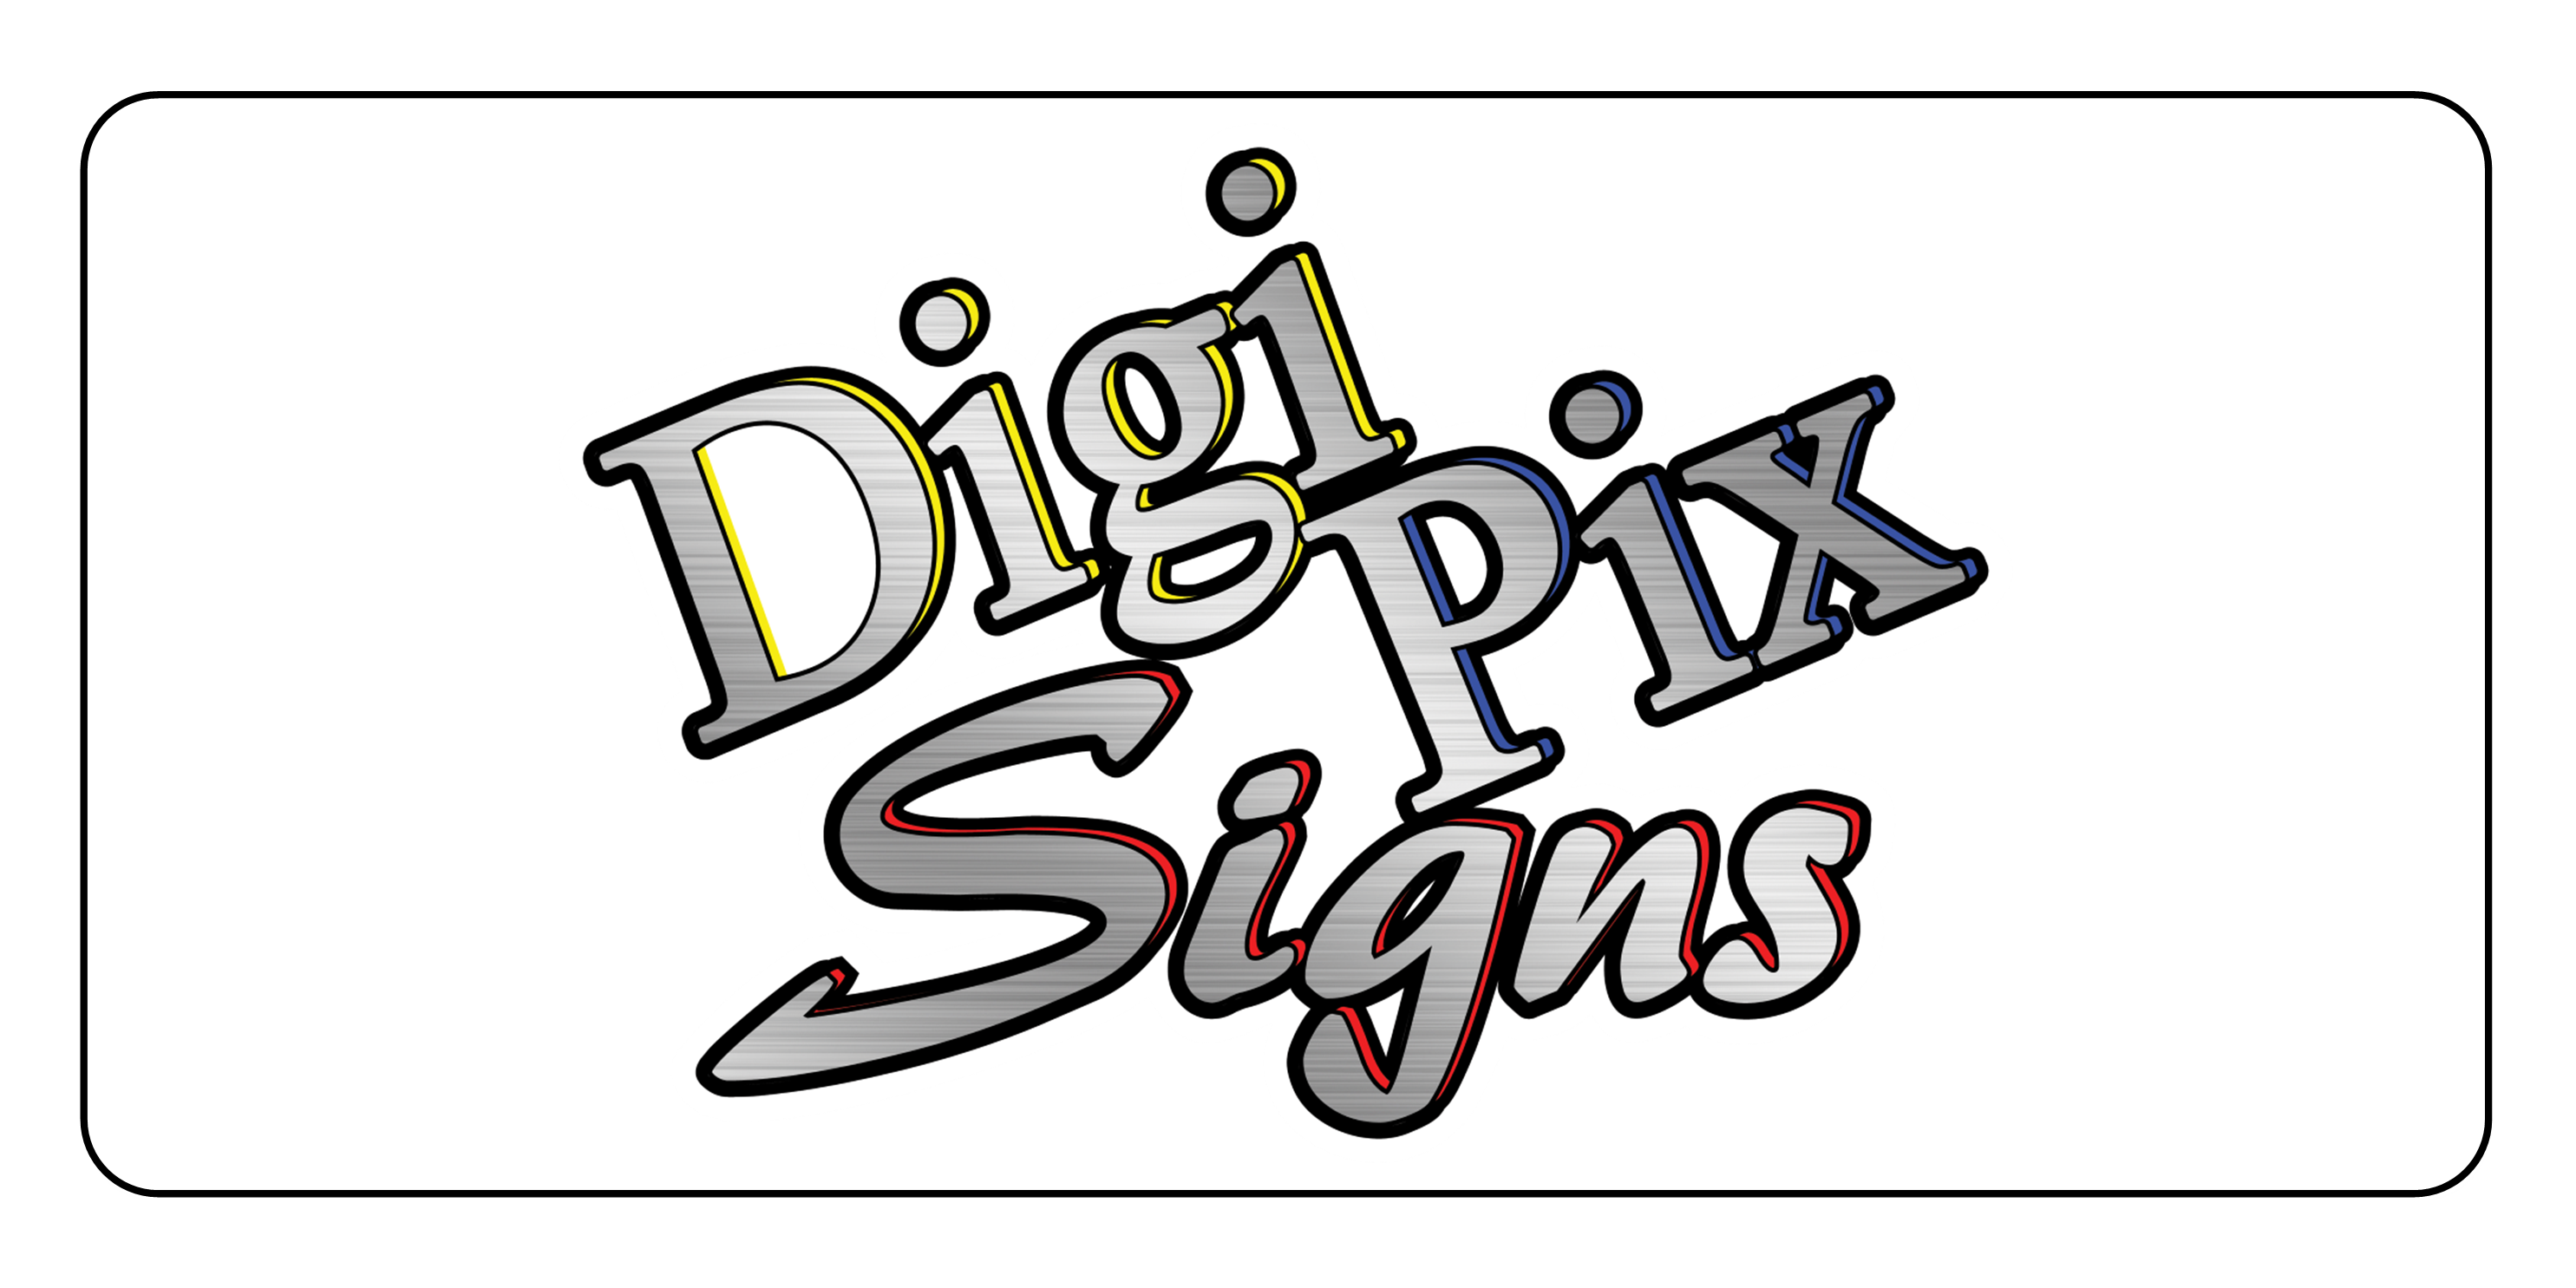 DigiPix